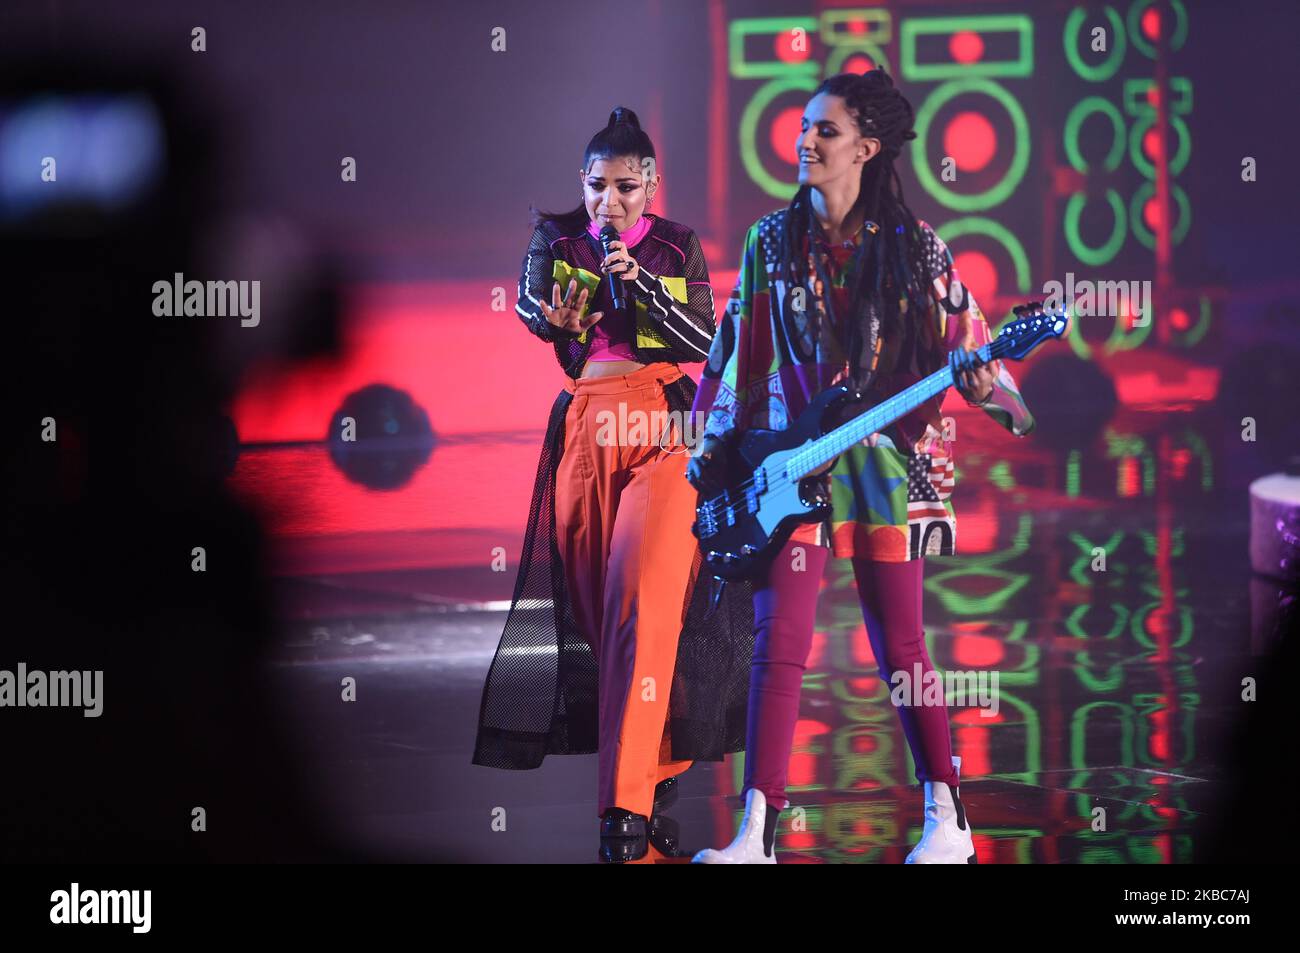 Groupe italien Booda chantant lors de la demi-édition italienne du programme international de télévision X Factor, en X Factor Dome, à Monza, Italie (photo par Andrea Diodato/NurPhoto) Banque D'Images